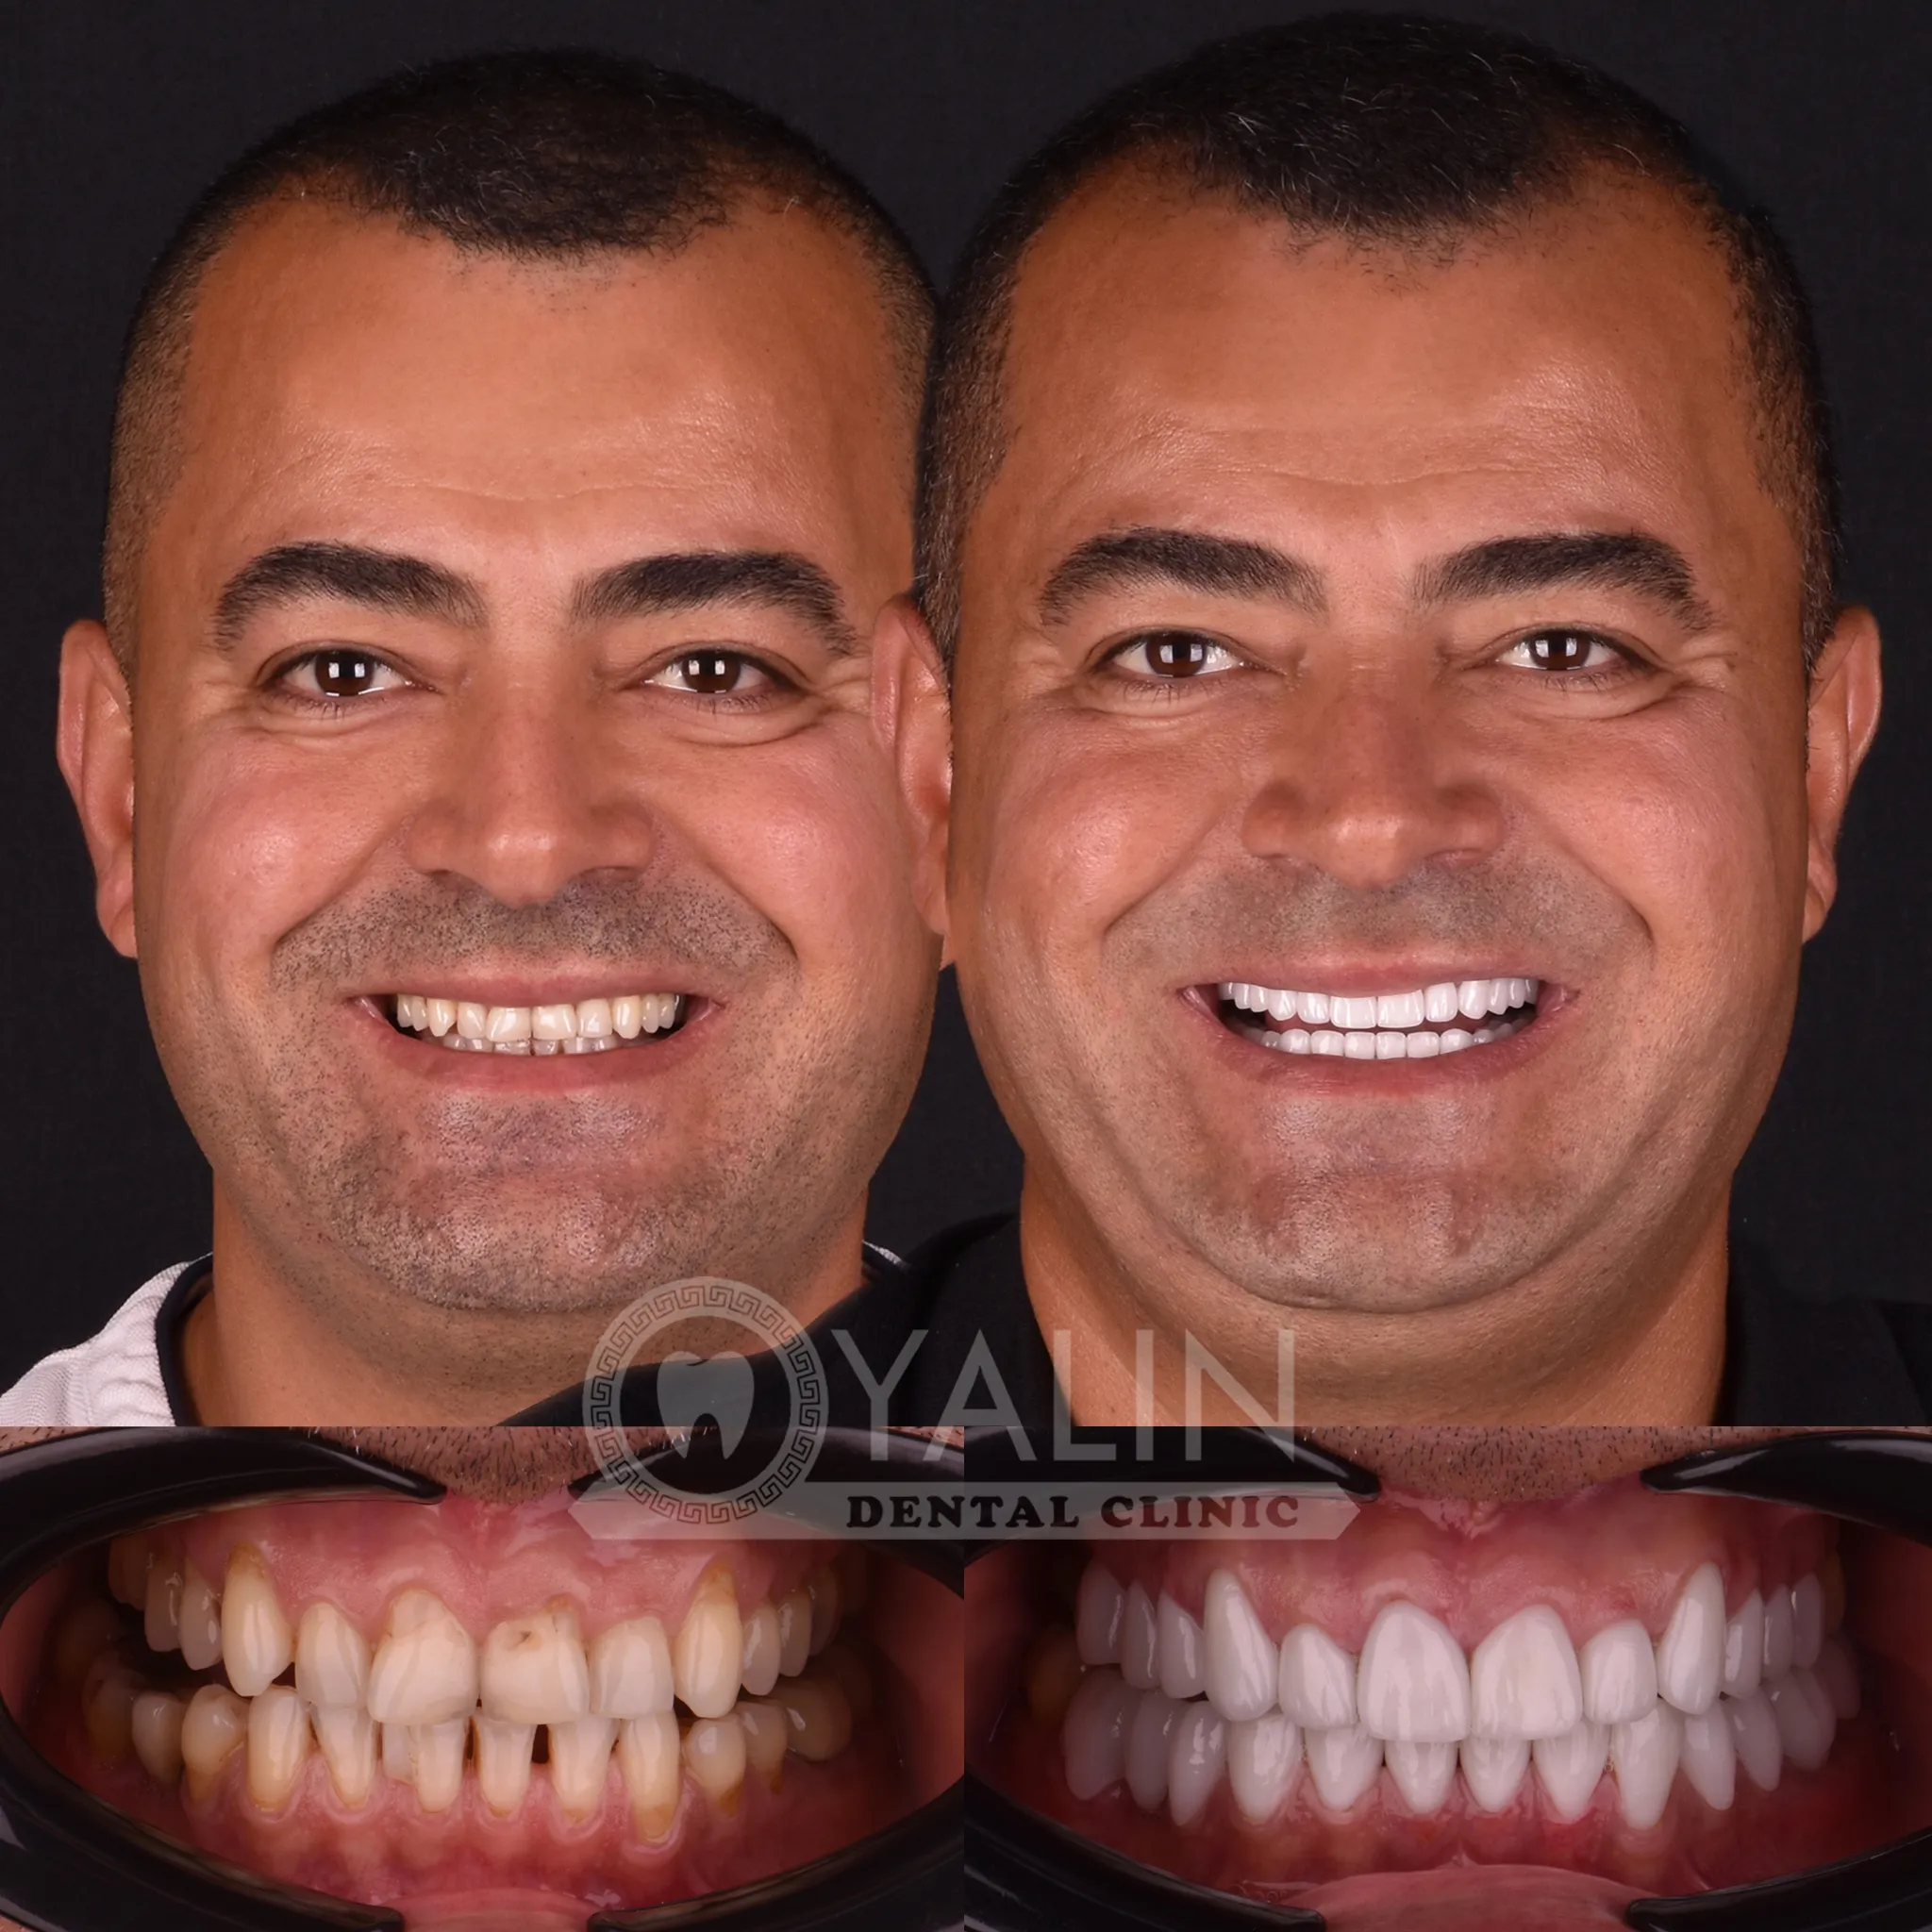 Get teeth done in Turkey Antalya 2 1